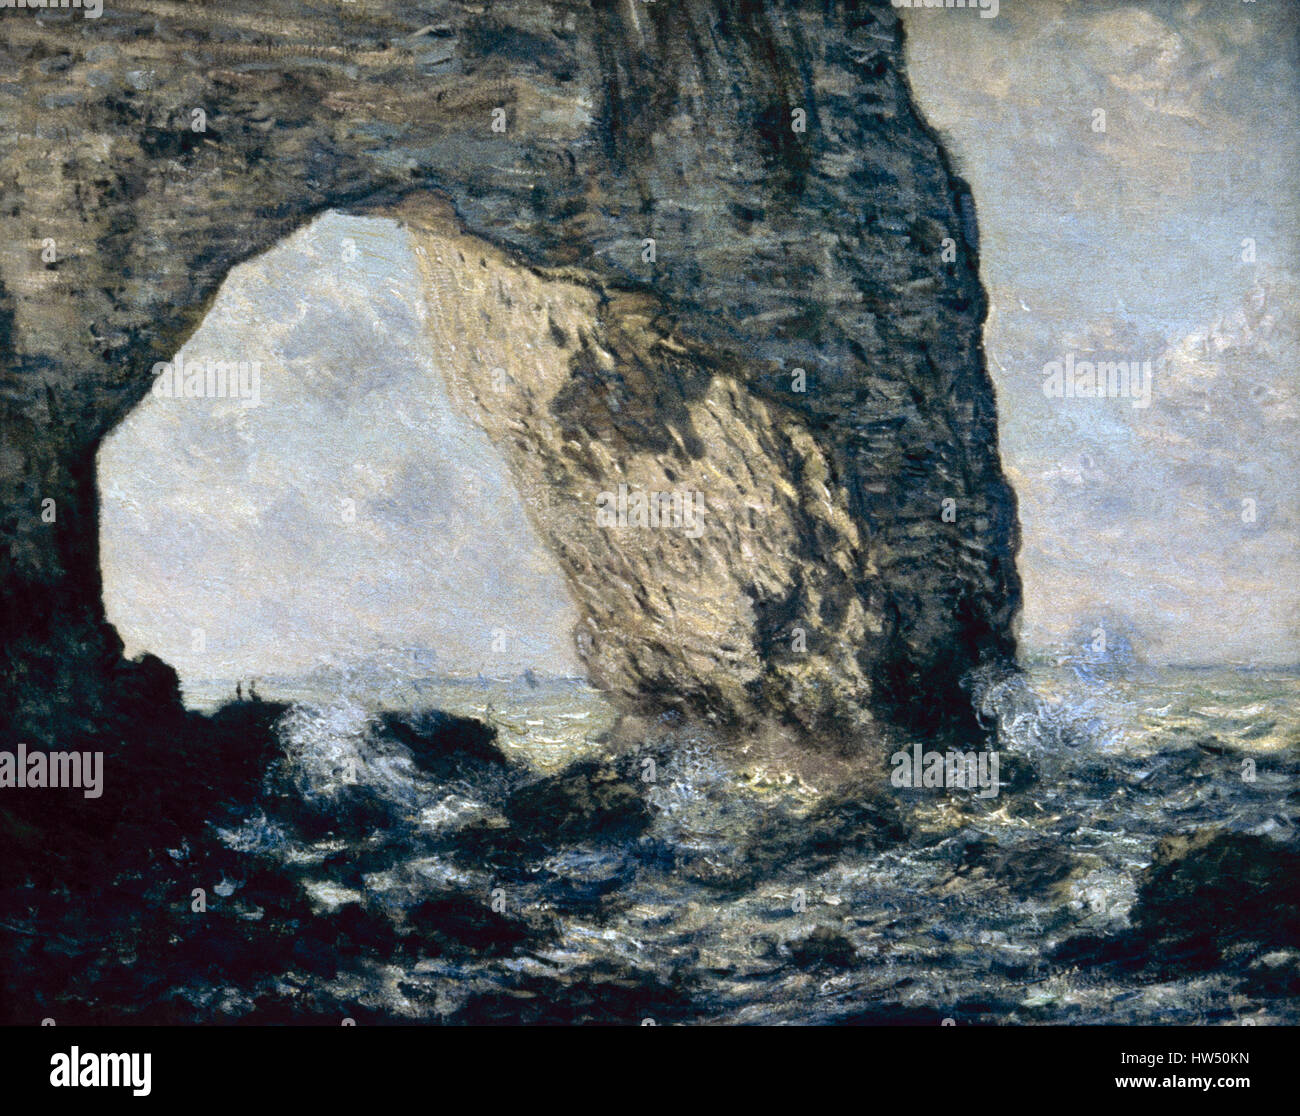 Claude Monet (1840-1926). El pintor francés. El impresionismo. La Manneporte (Etretat), 1883. Óleo sobre lienzo. La costa de Normandía. Museo Metropolitano de Arte de Nueva York. Estados Unidos. Foto de stock